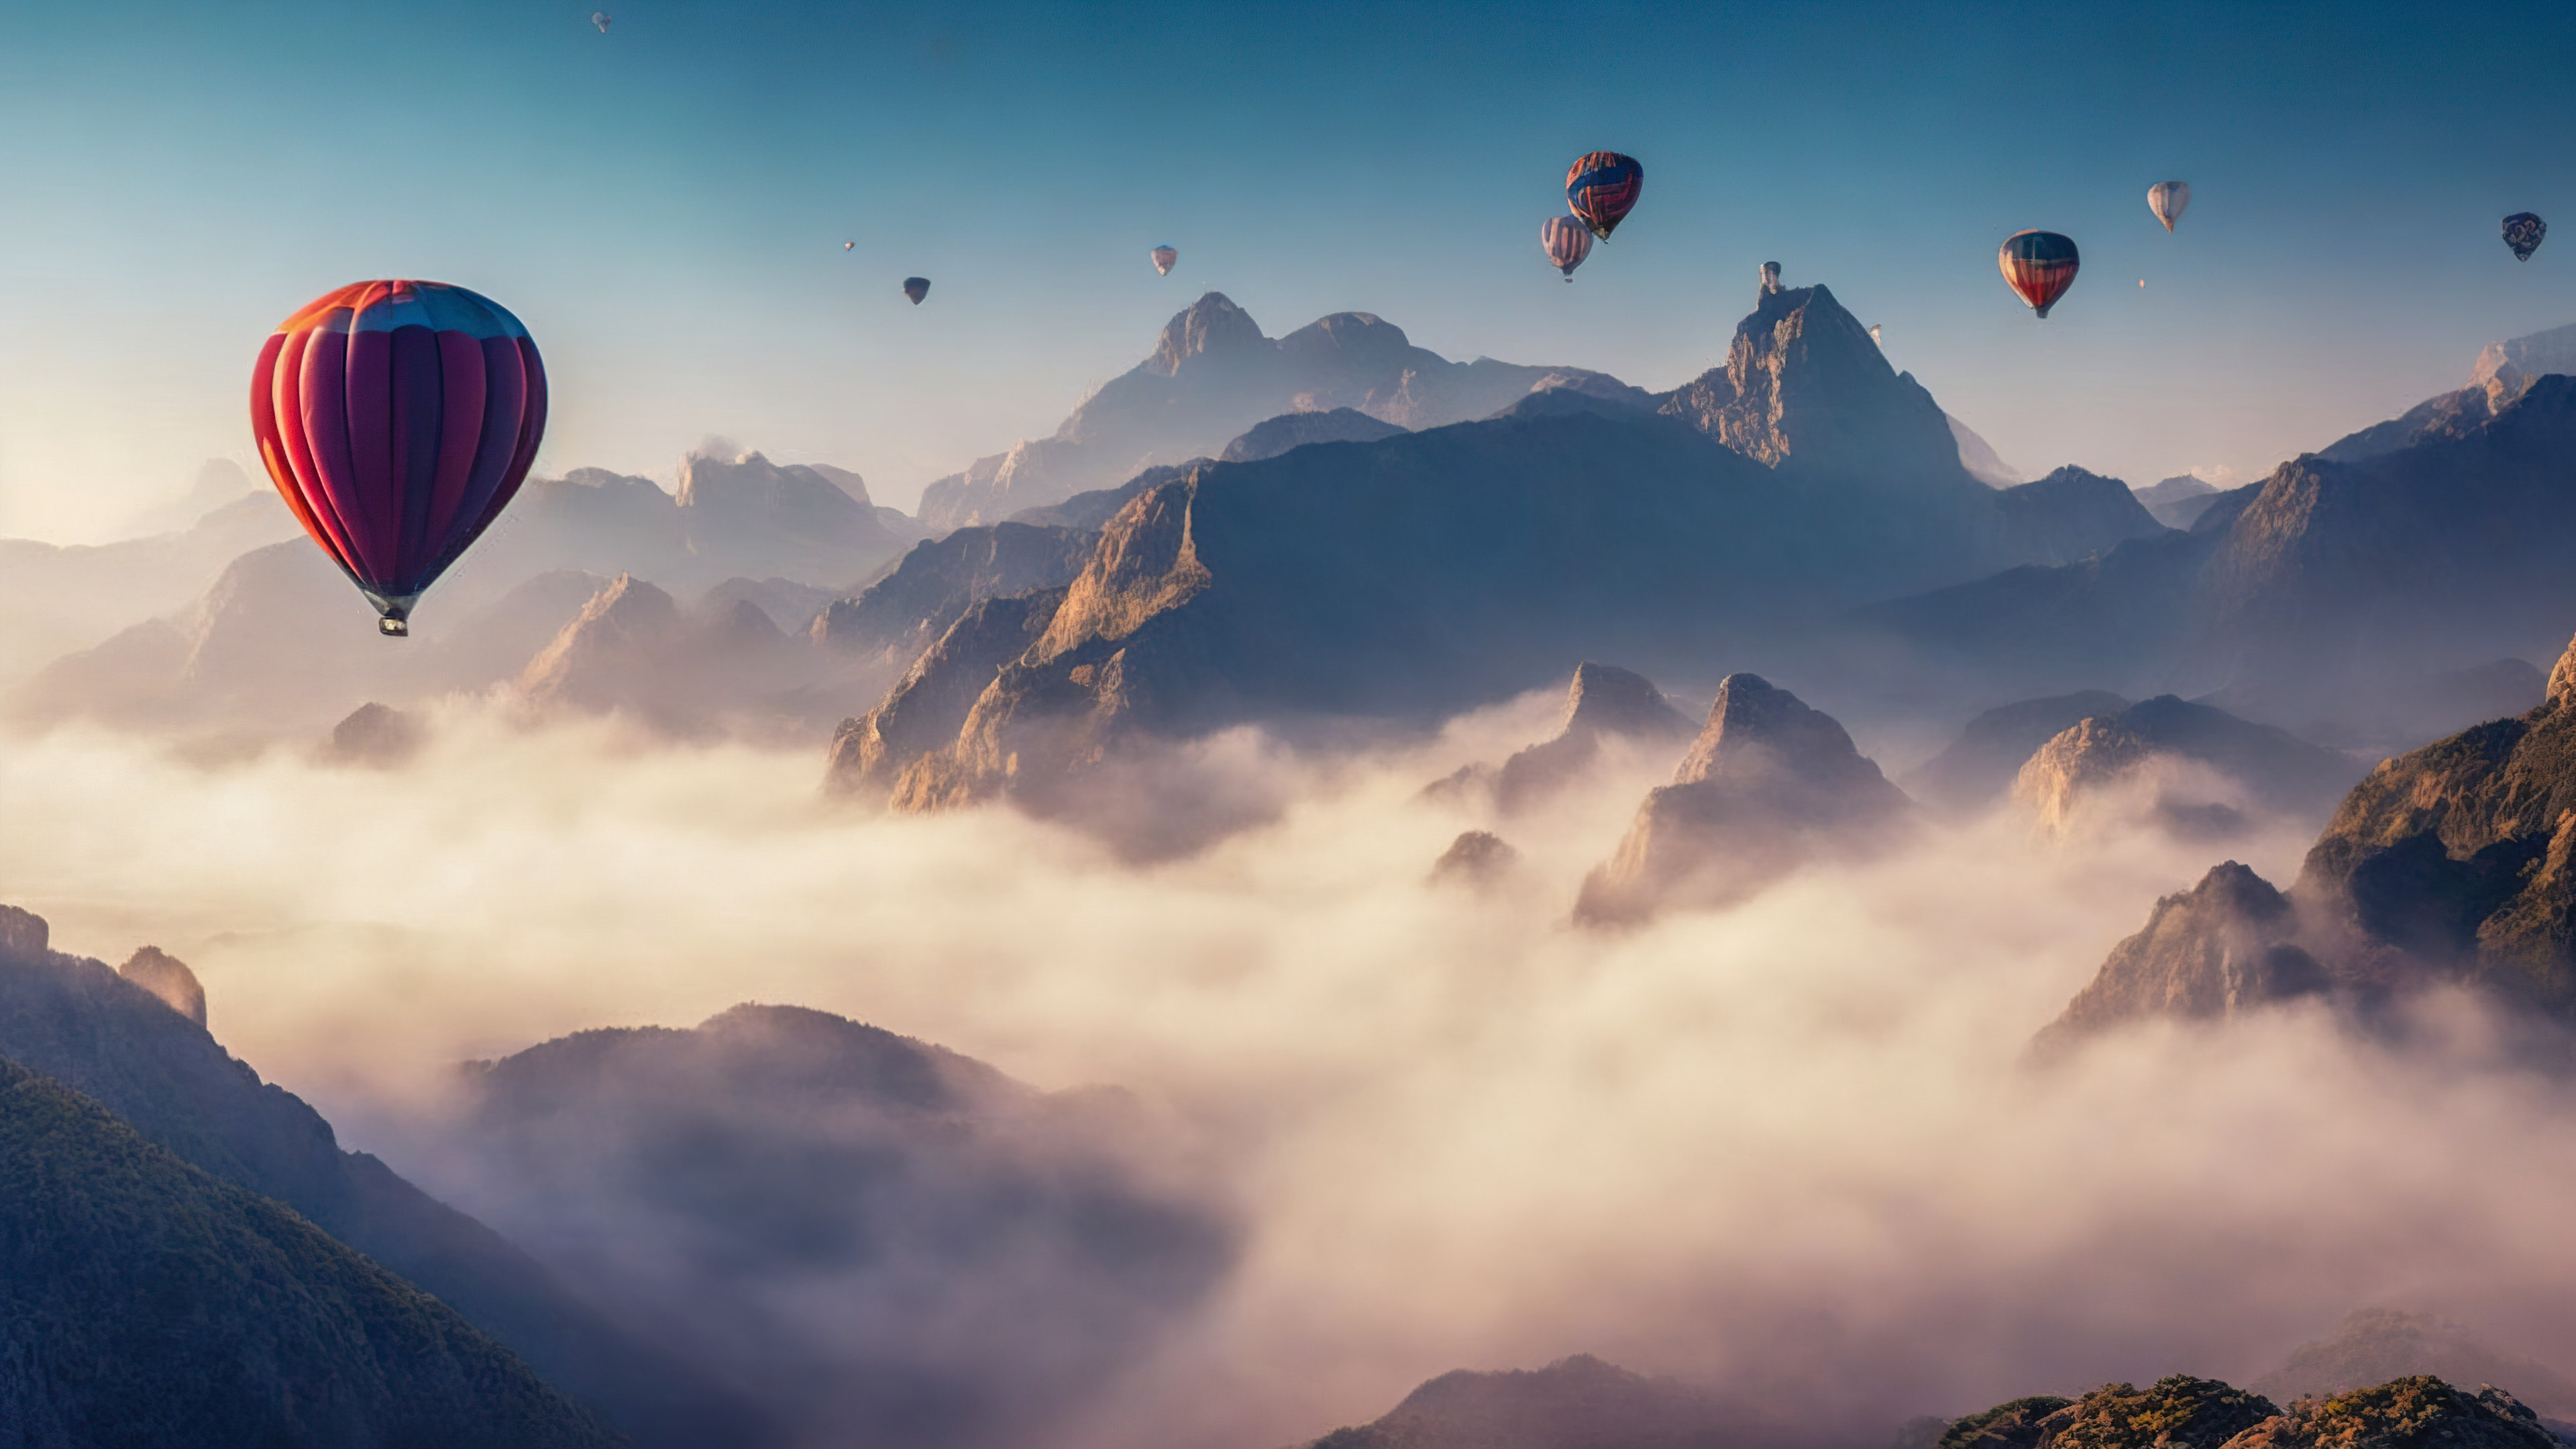 Téléchargez le surréalisme avec notre fond d'écran de paysage de montagne, capturant un ciel surréaliste rempli de montgolfières flottant paisiblement au-dessus d'un paysage montagneux brumeux.